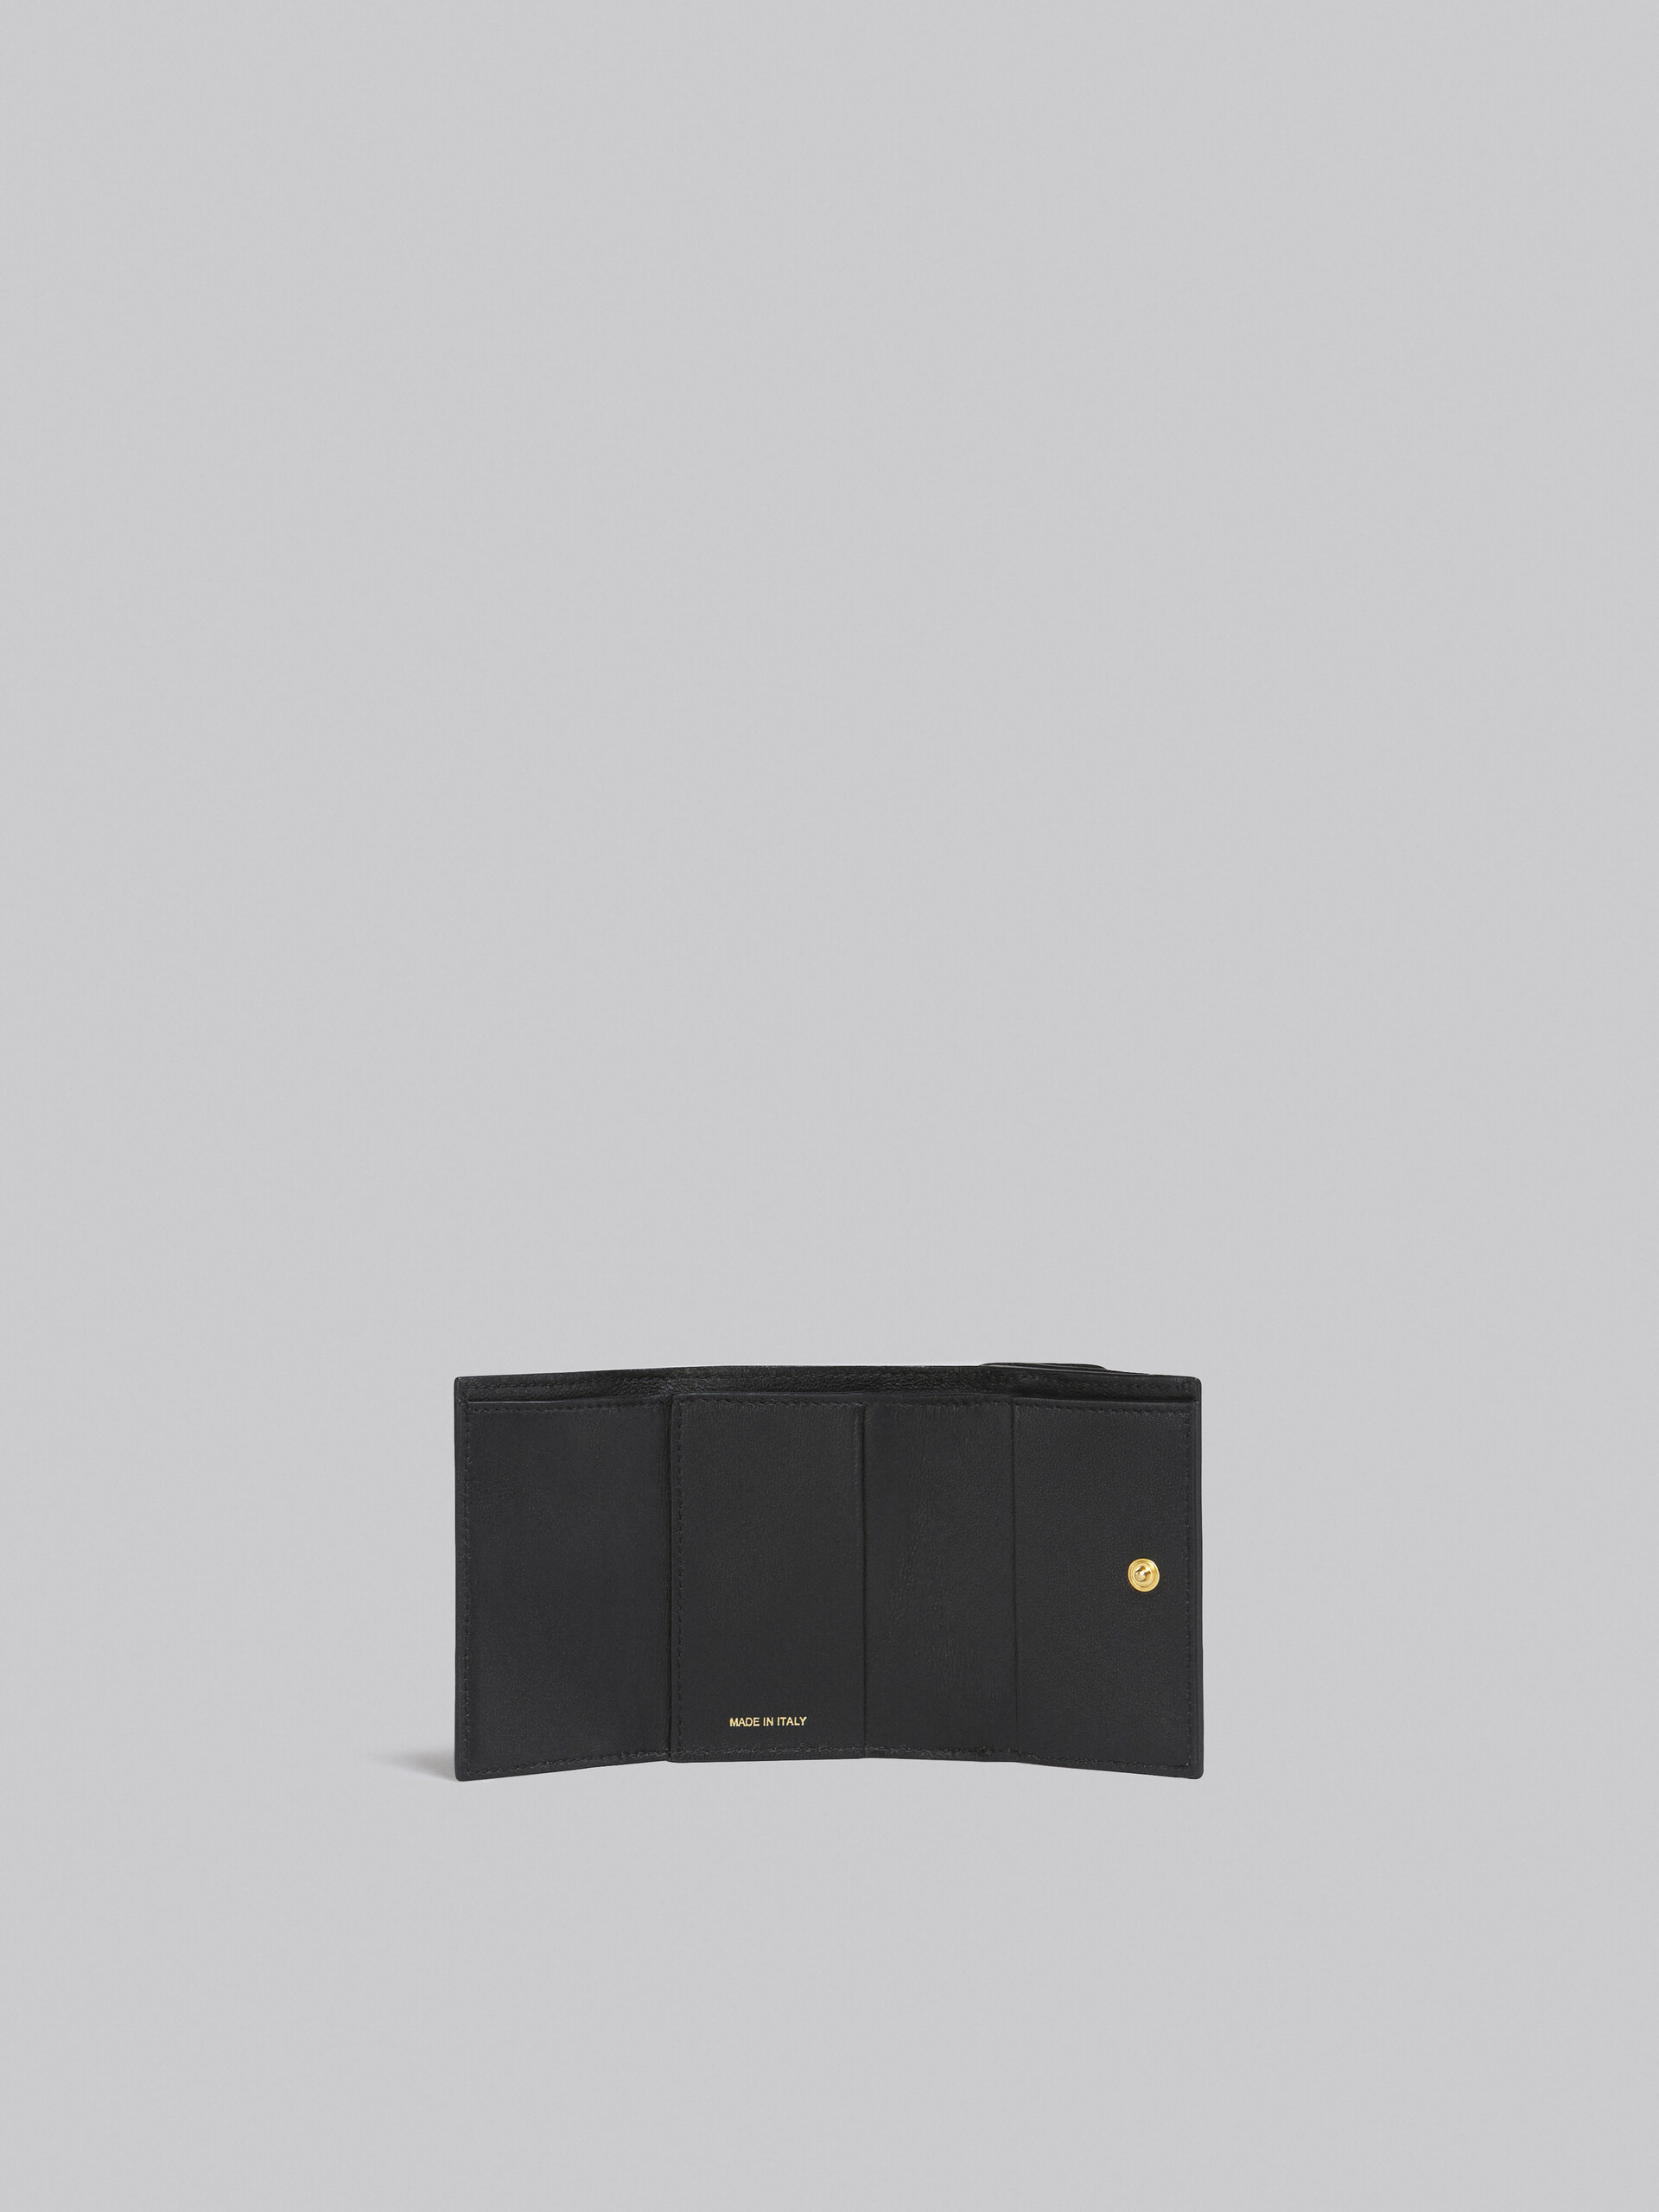 サフィアーノレザー ブラック 三つ折りウォレット - 財布 - Image 2